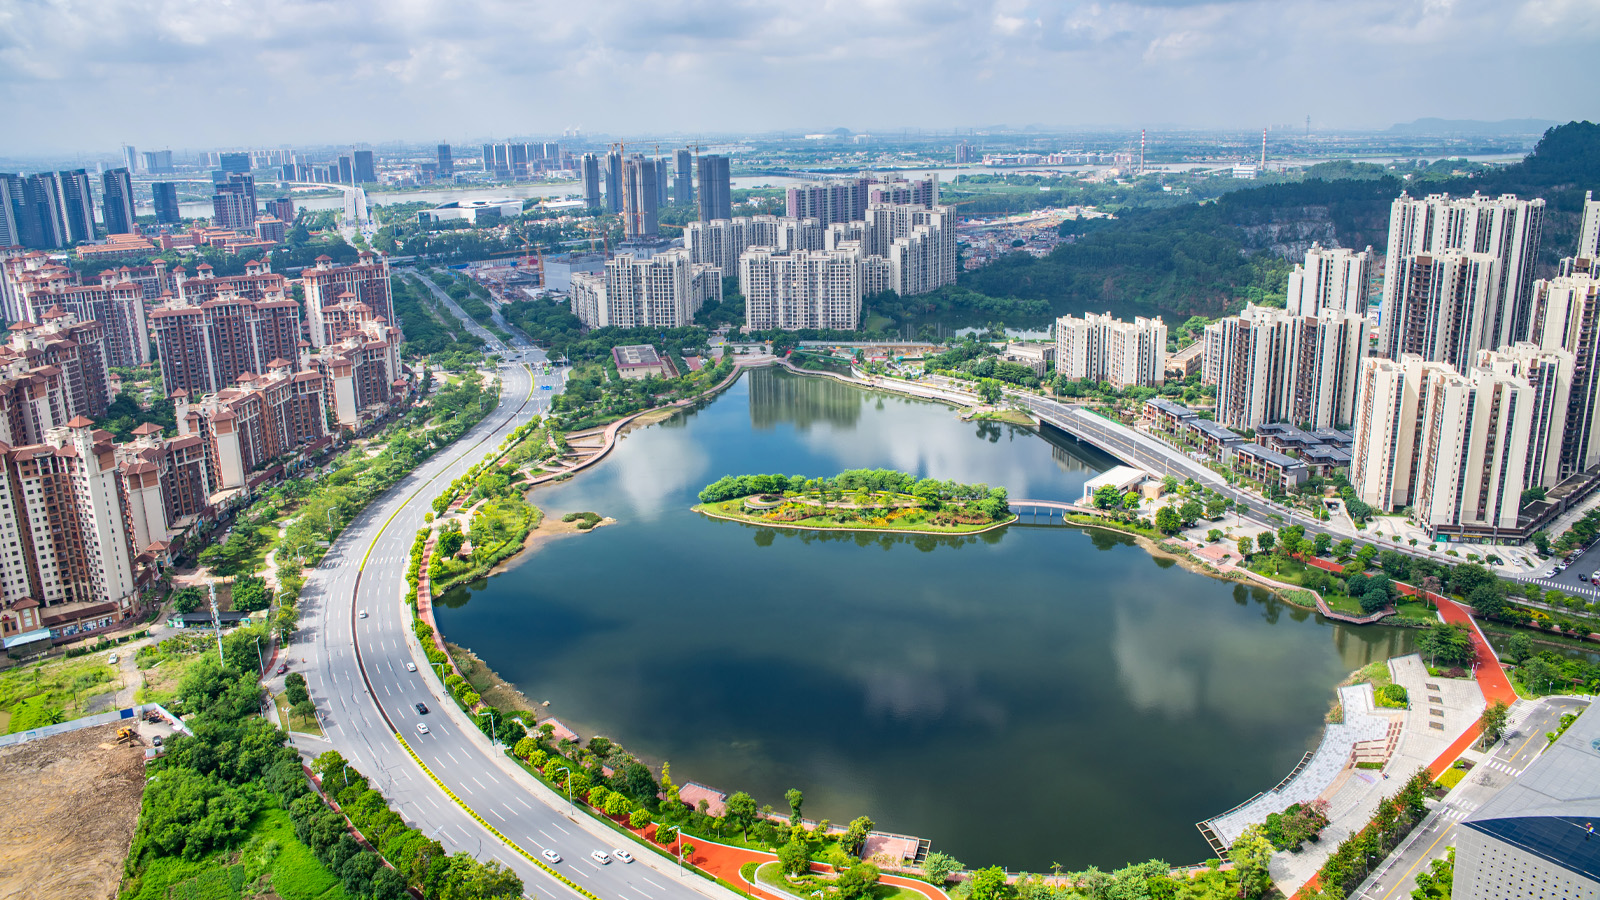 Scenery of Phoenix Lake Park, Nansha, Guangzhou, China; Shutterstock ID 1822104245; Purchase Order: -